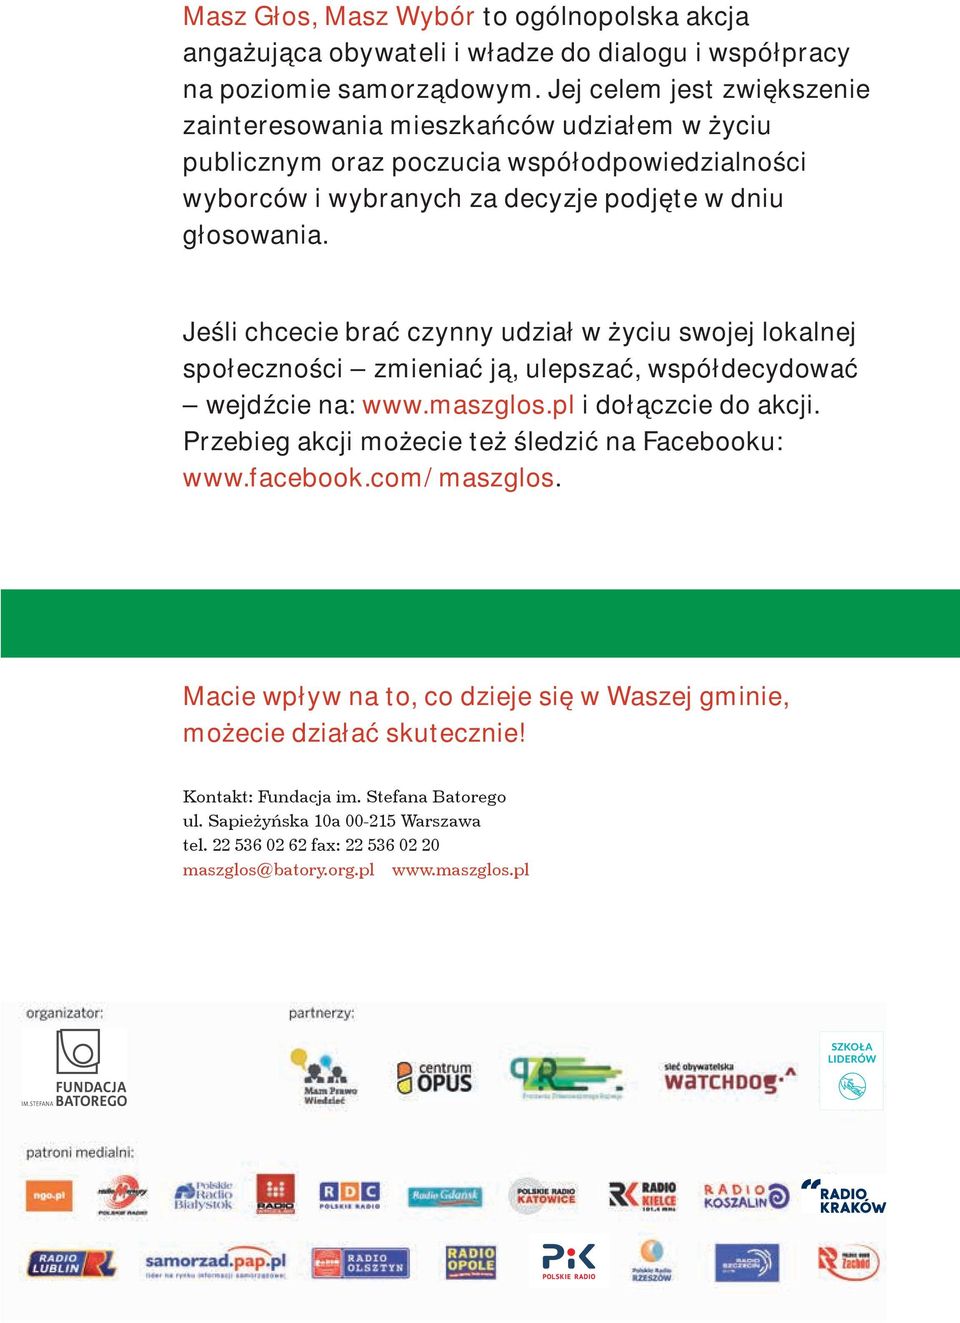 Jeśli chcecie brać czynny udział w życiu swojej lokalnej społeczności zmieniać ją, ulepszać, współdecydować wejdźcie na: www.maszglos.pl i dołączcie do akcji.